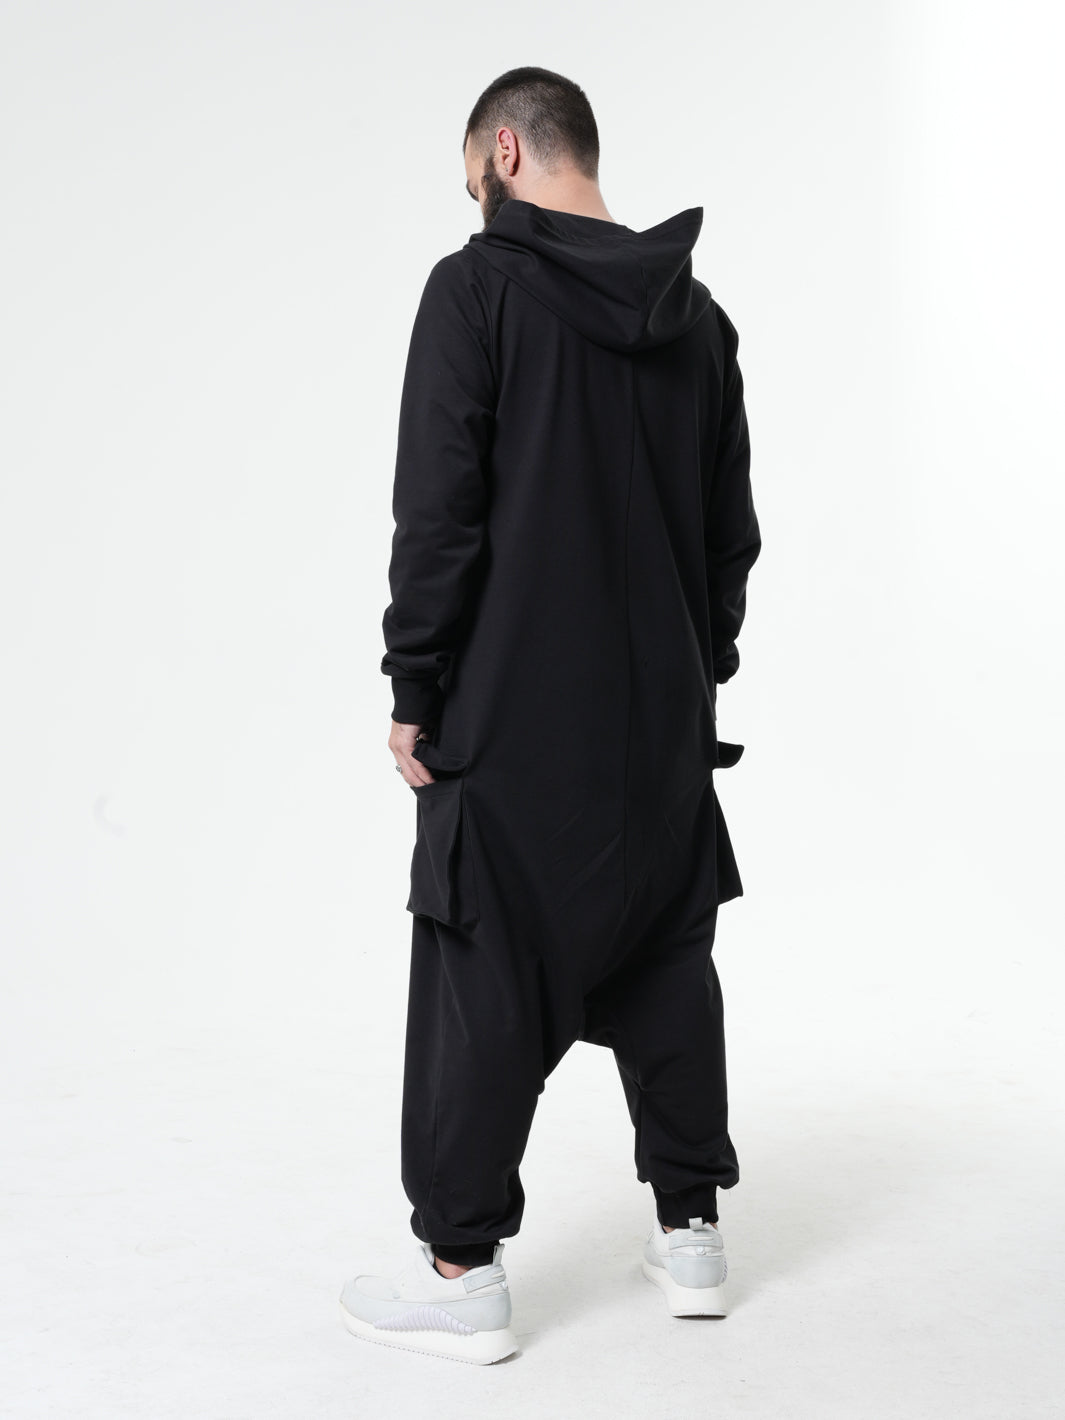 Black Hooded Jumpsuit